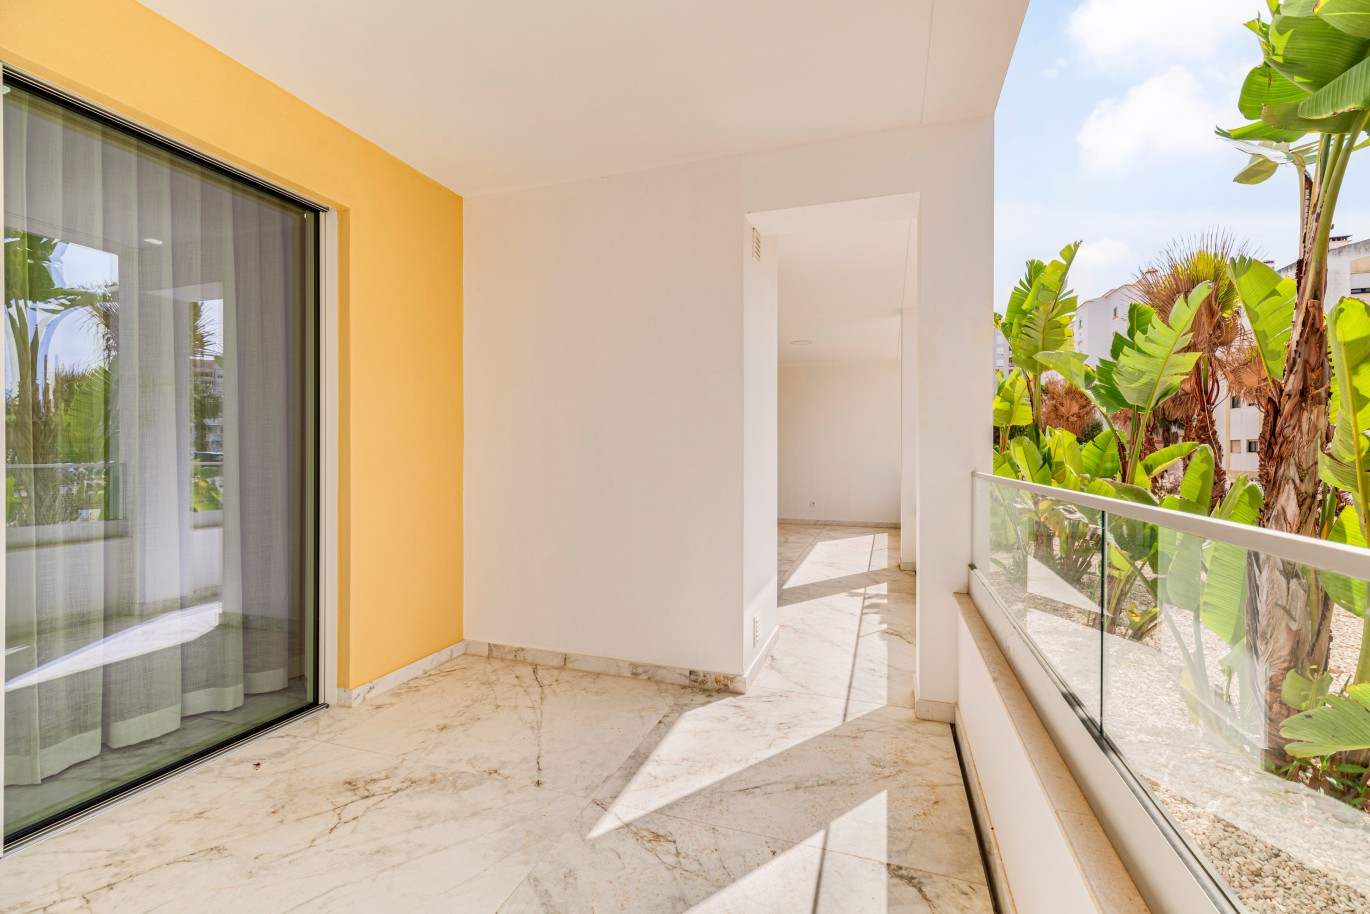 Verkauf einer Wohnung im Bau, mit Terrasse, Lagos, Algarve, Portugal_238542